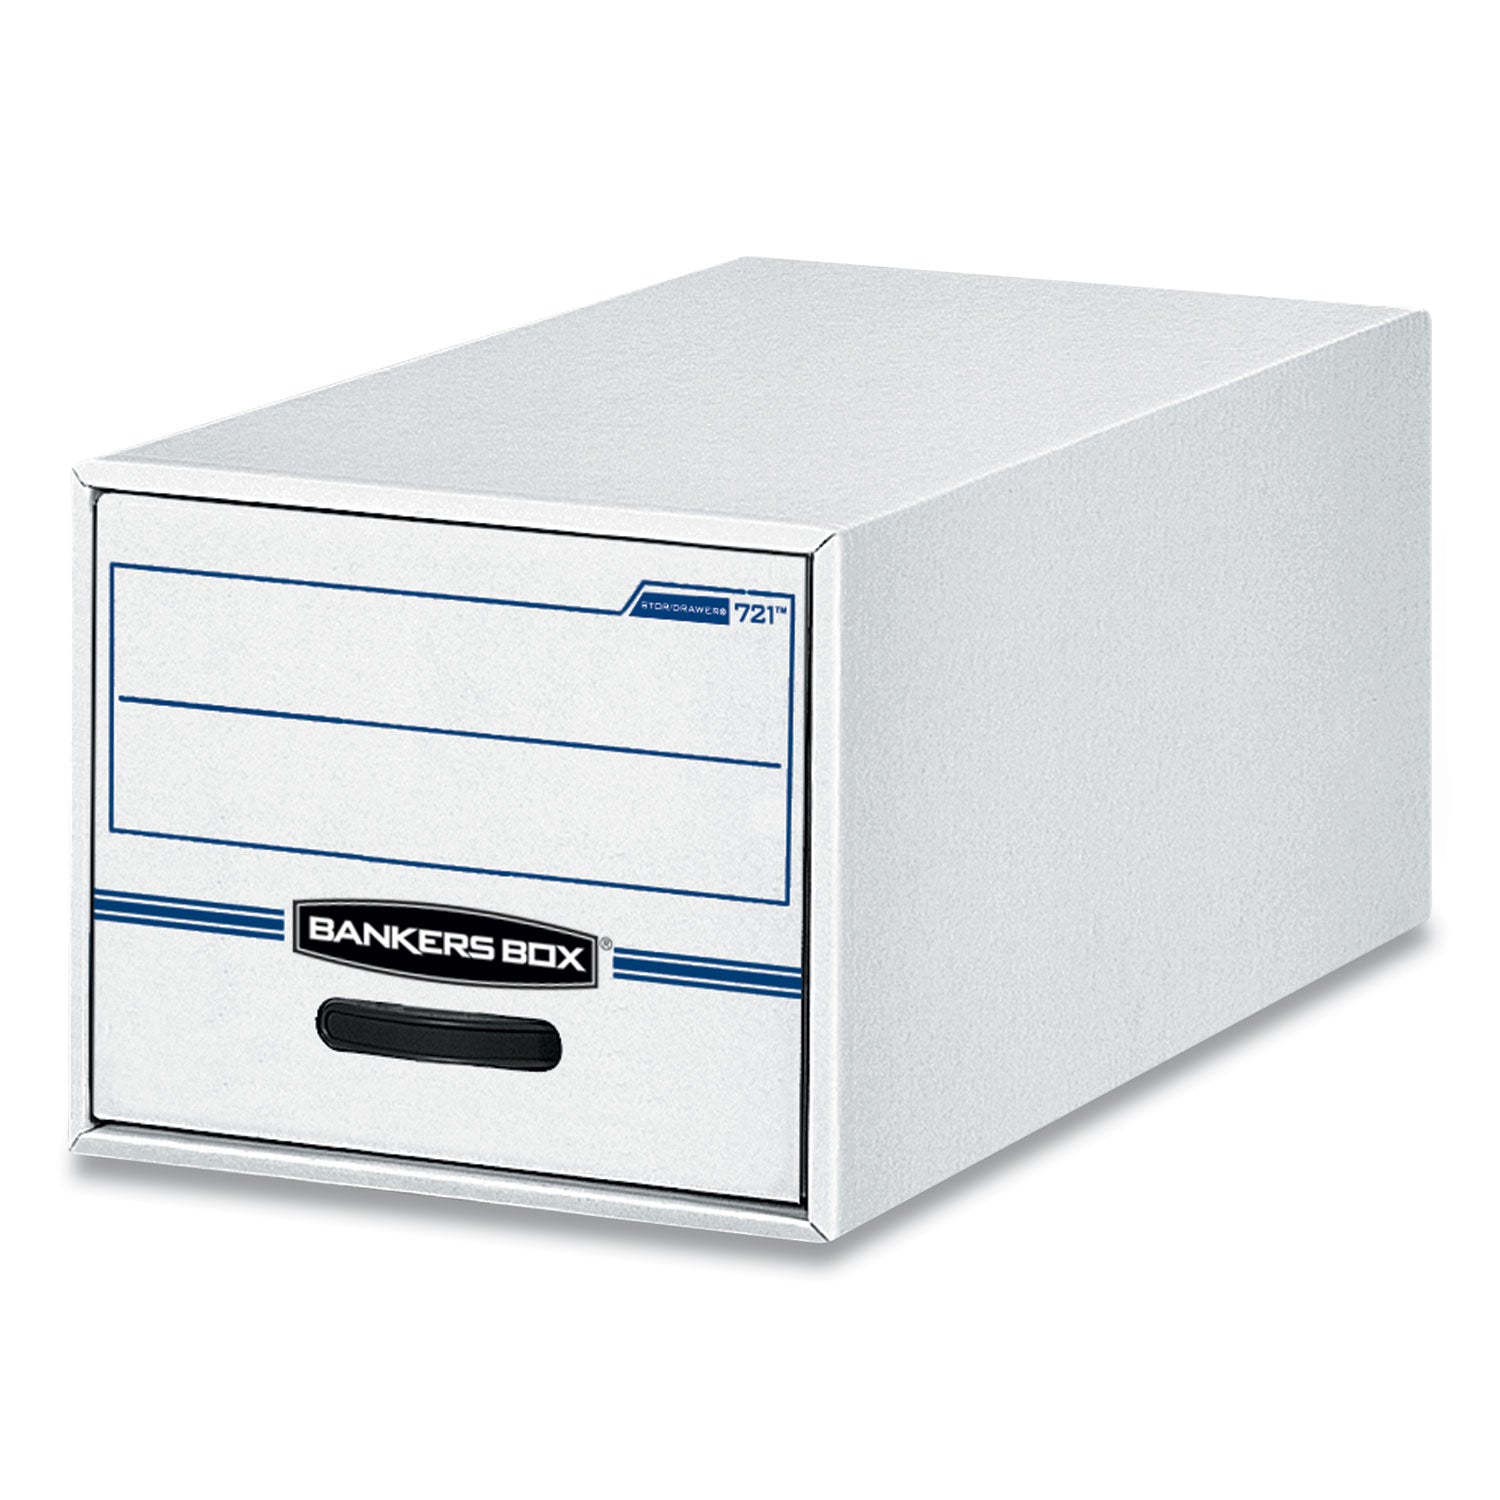 STOR/DRAWER Basic Space-Savings Storage Drawers, Legal Files, 16.75" x 19.5" x 11.5", White/Blue, 6/Carton - 